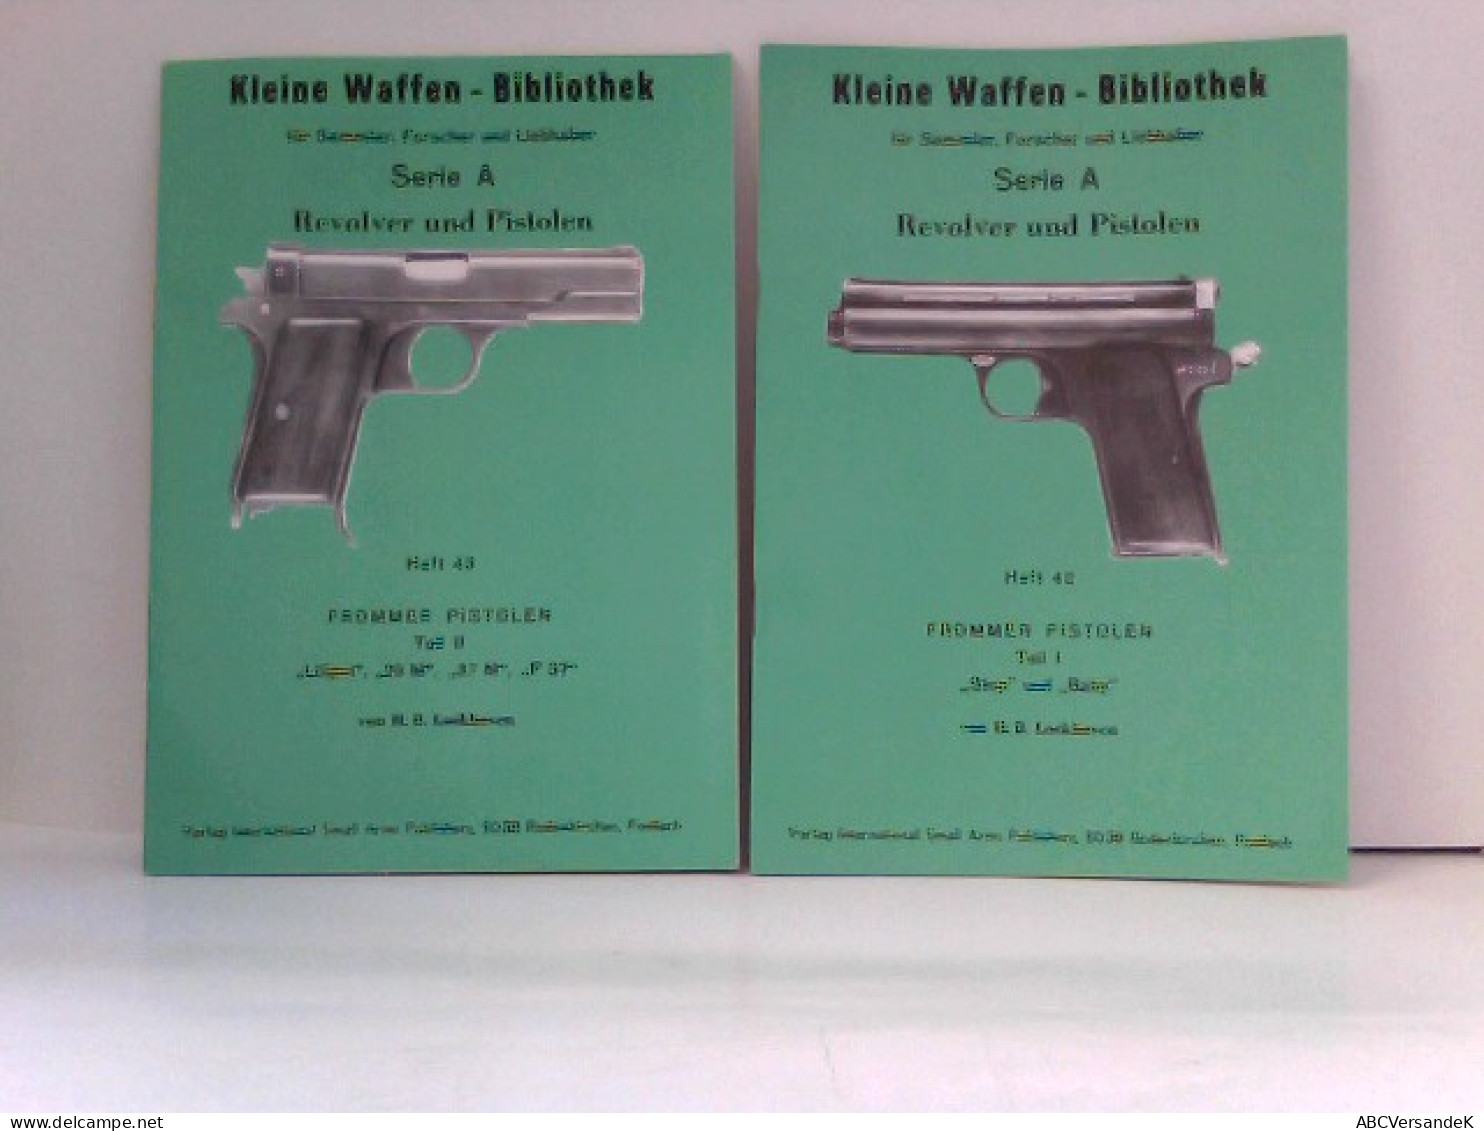 KONVOLUT Frommer Pistolen, Kleine Waffen - Bibliothek Für Sammler, Forscher Und Liebhaber - Heft 42 & Heft 43 - Police & Military